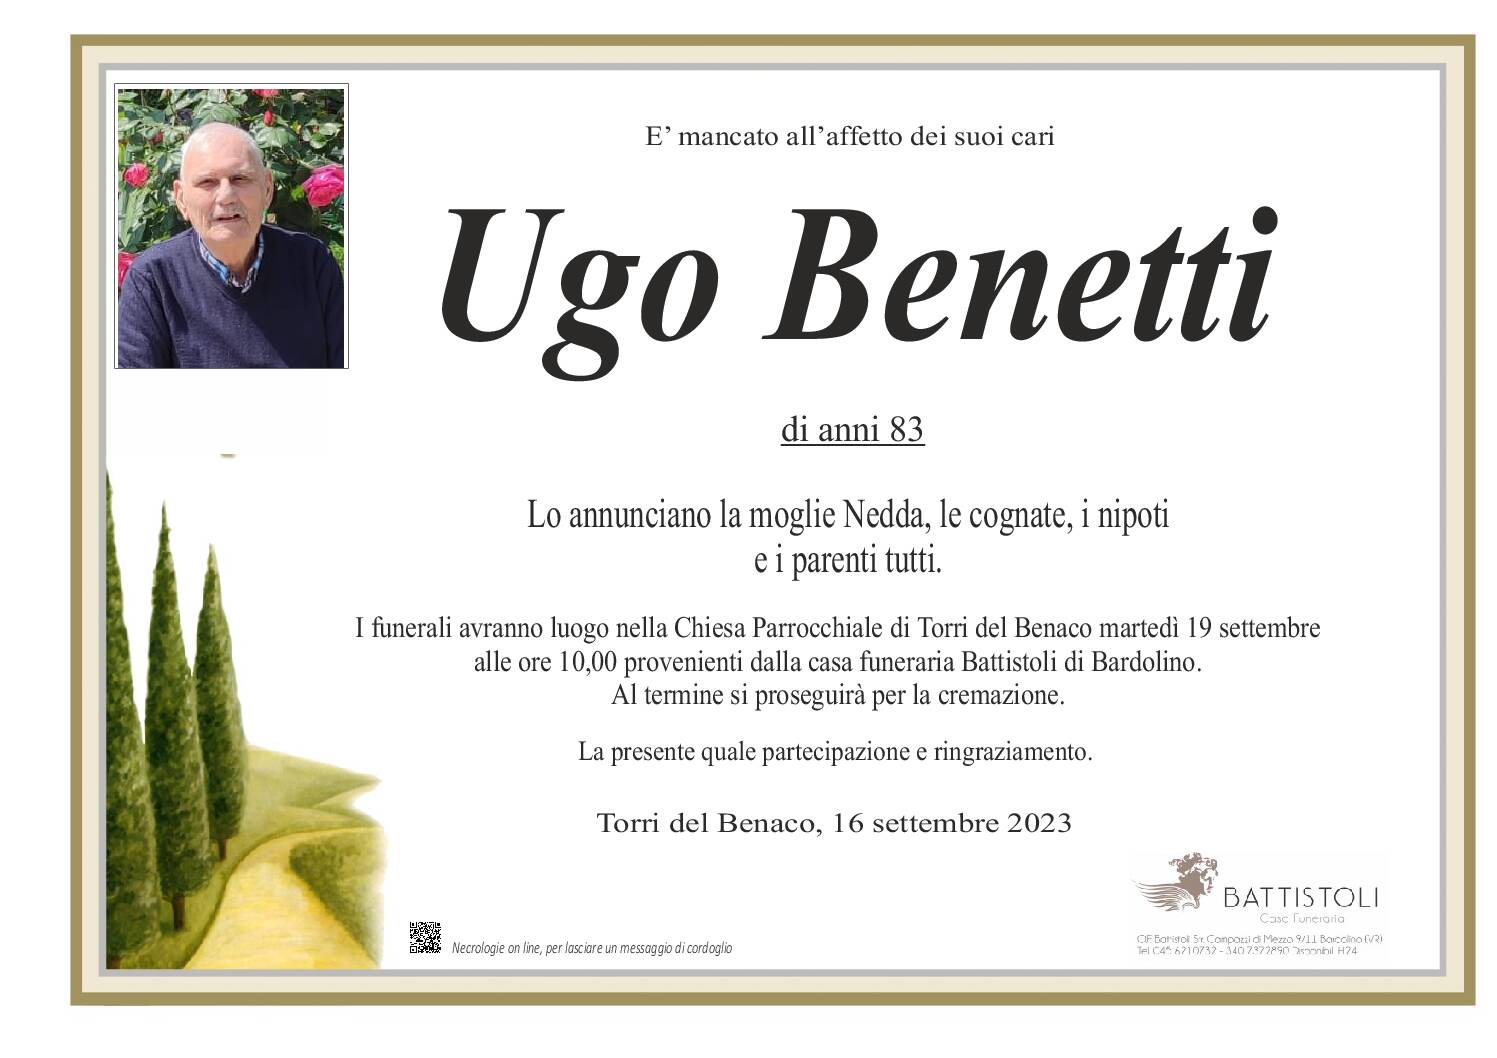 Benetti Ugo